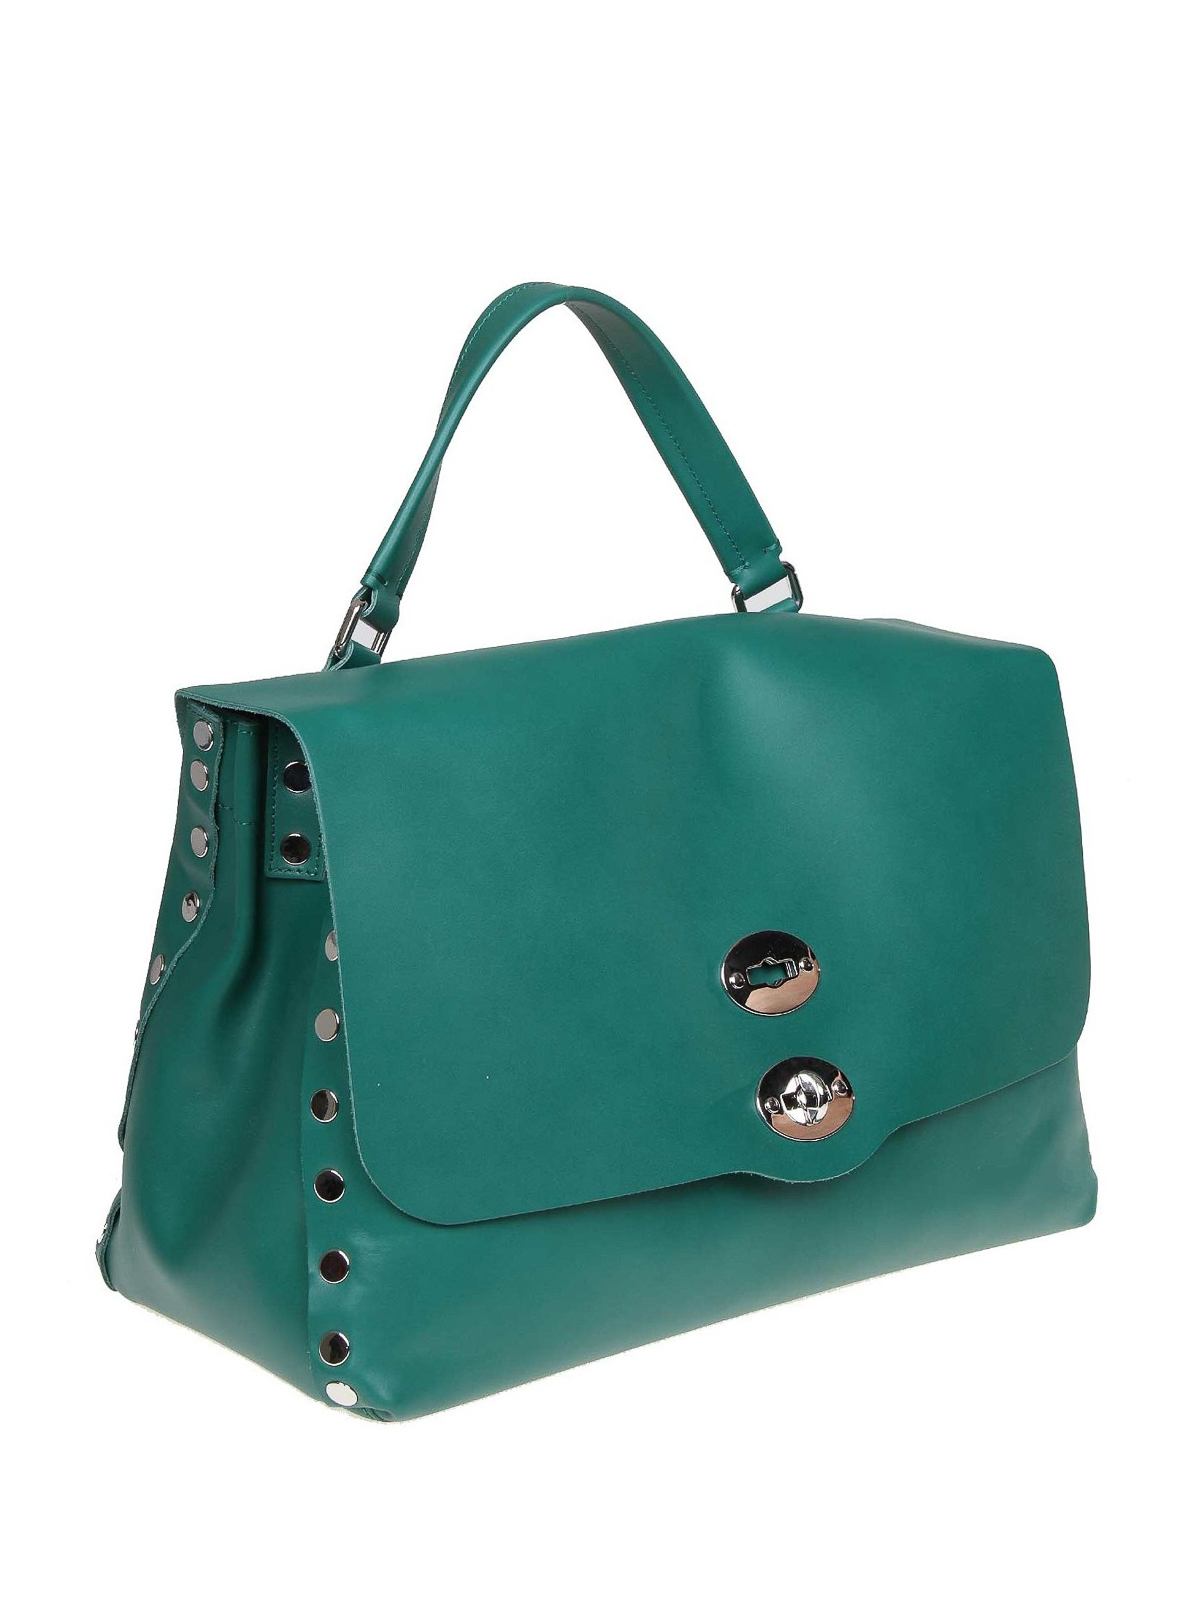 Totes bags Zanellato - Postina M Original Silk green leather bag 